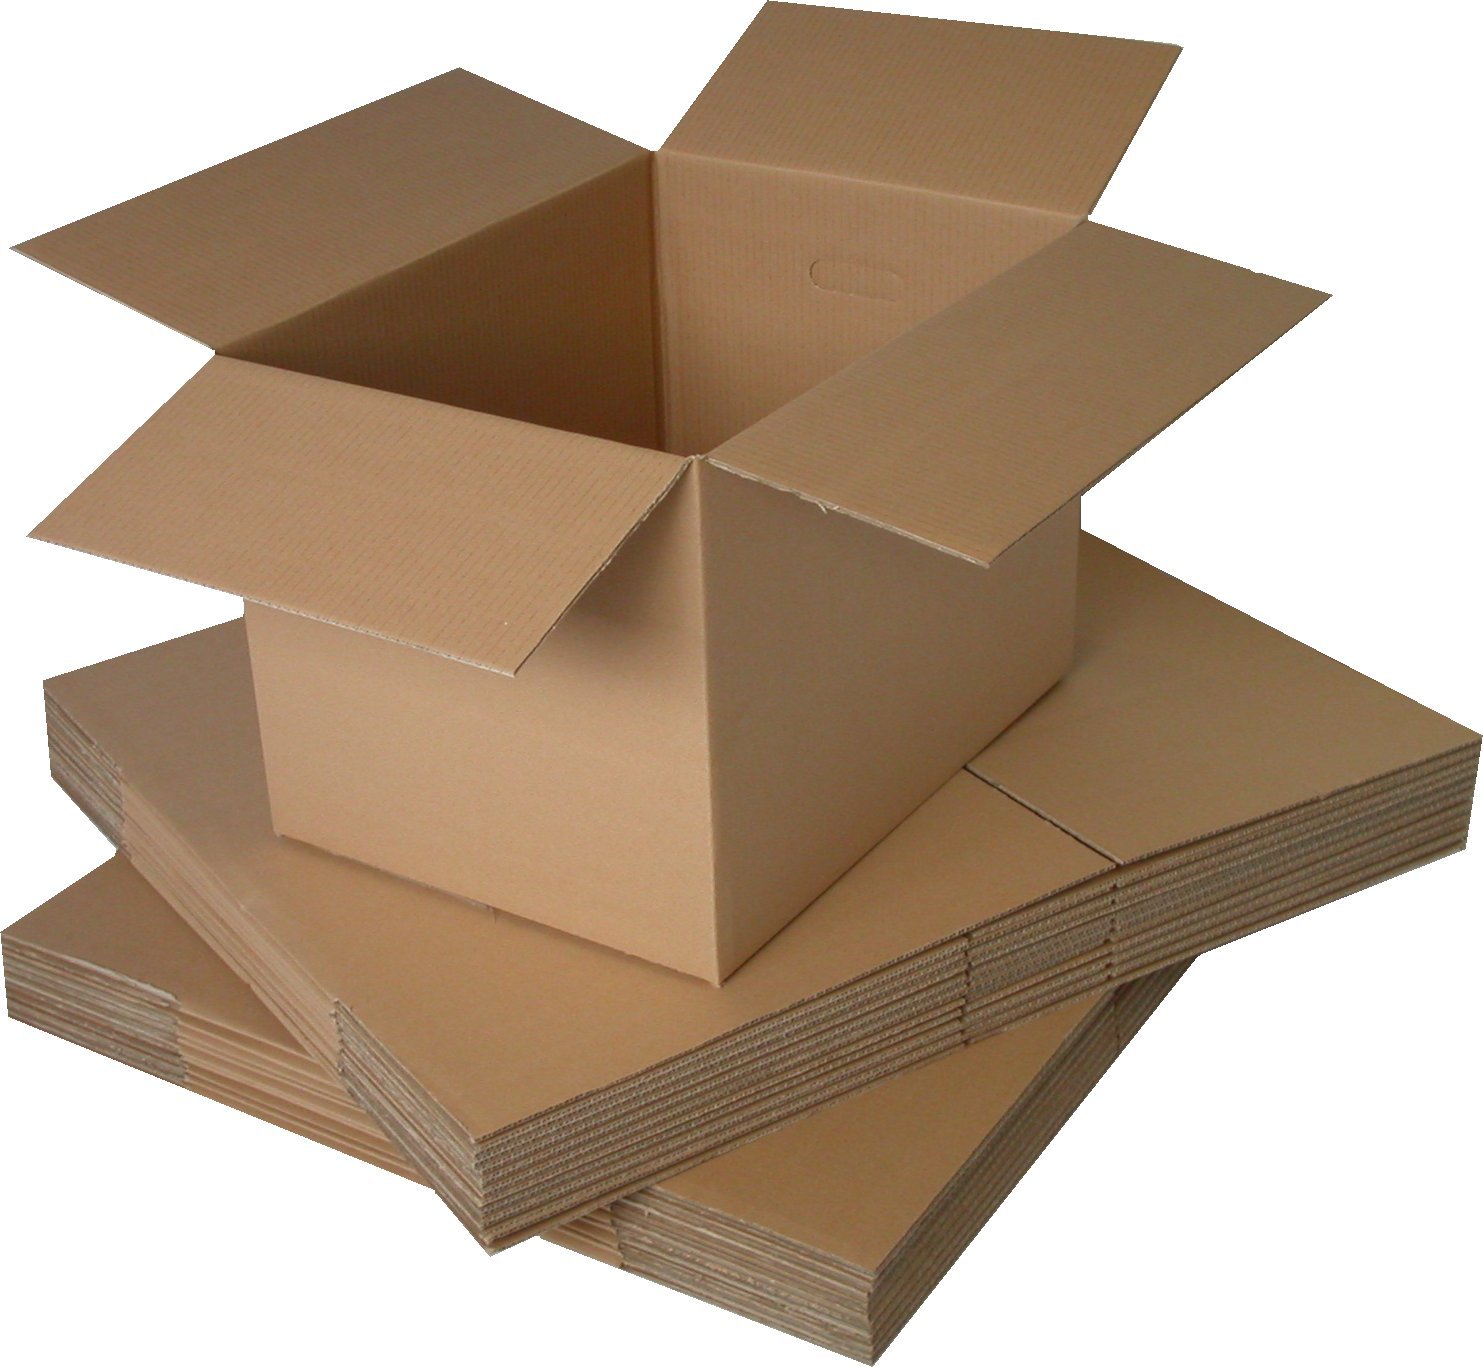 Đặc điểm và ứng dụng của thùng carton 5 lớp